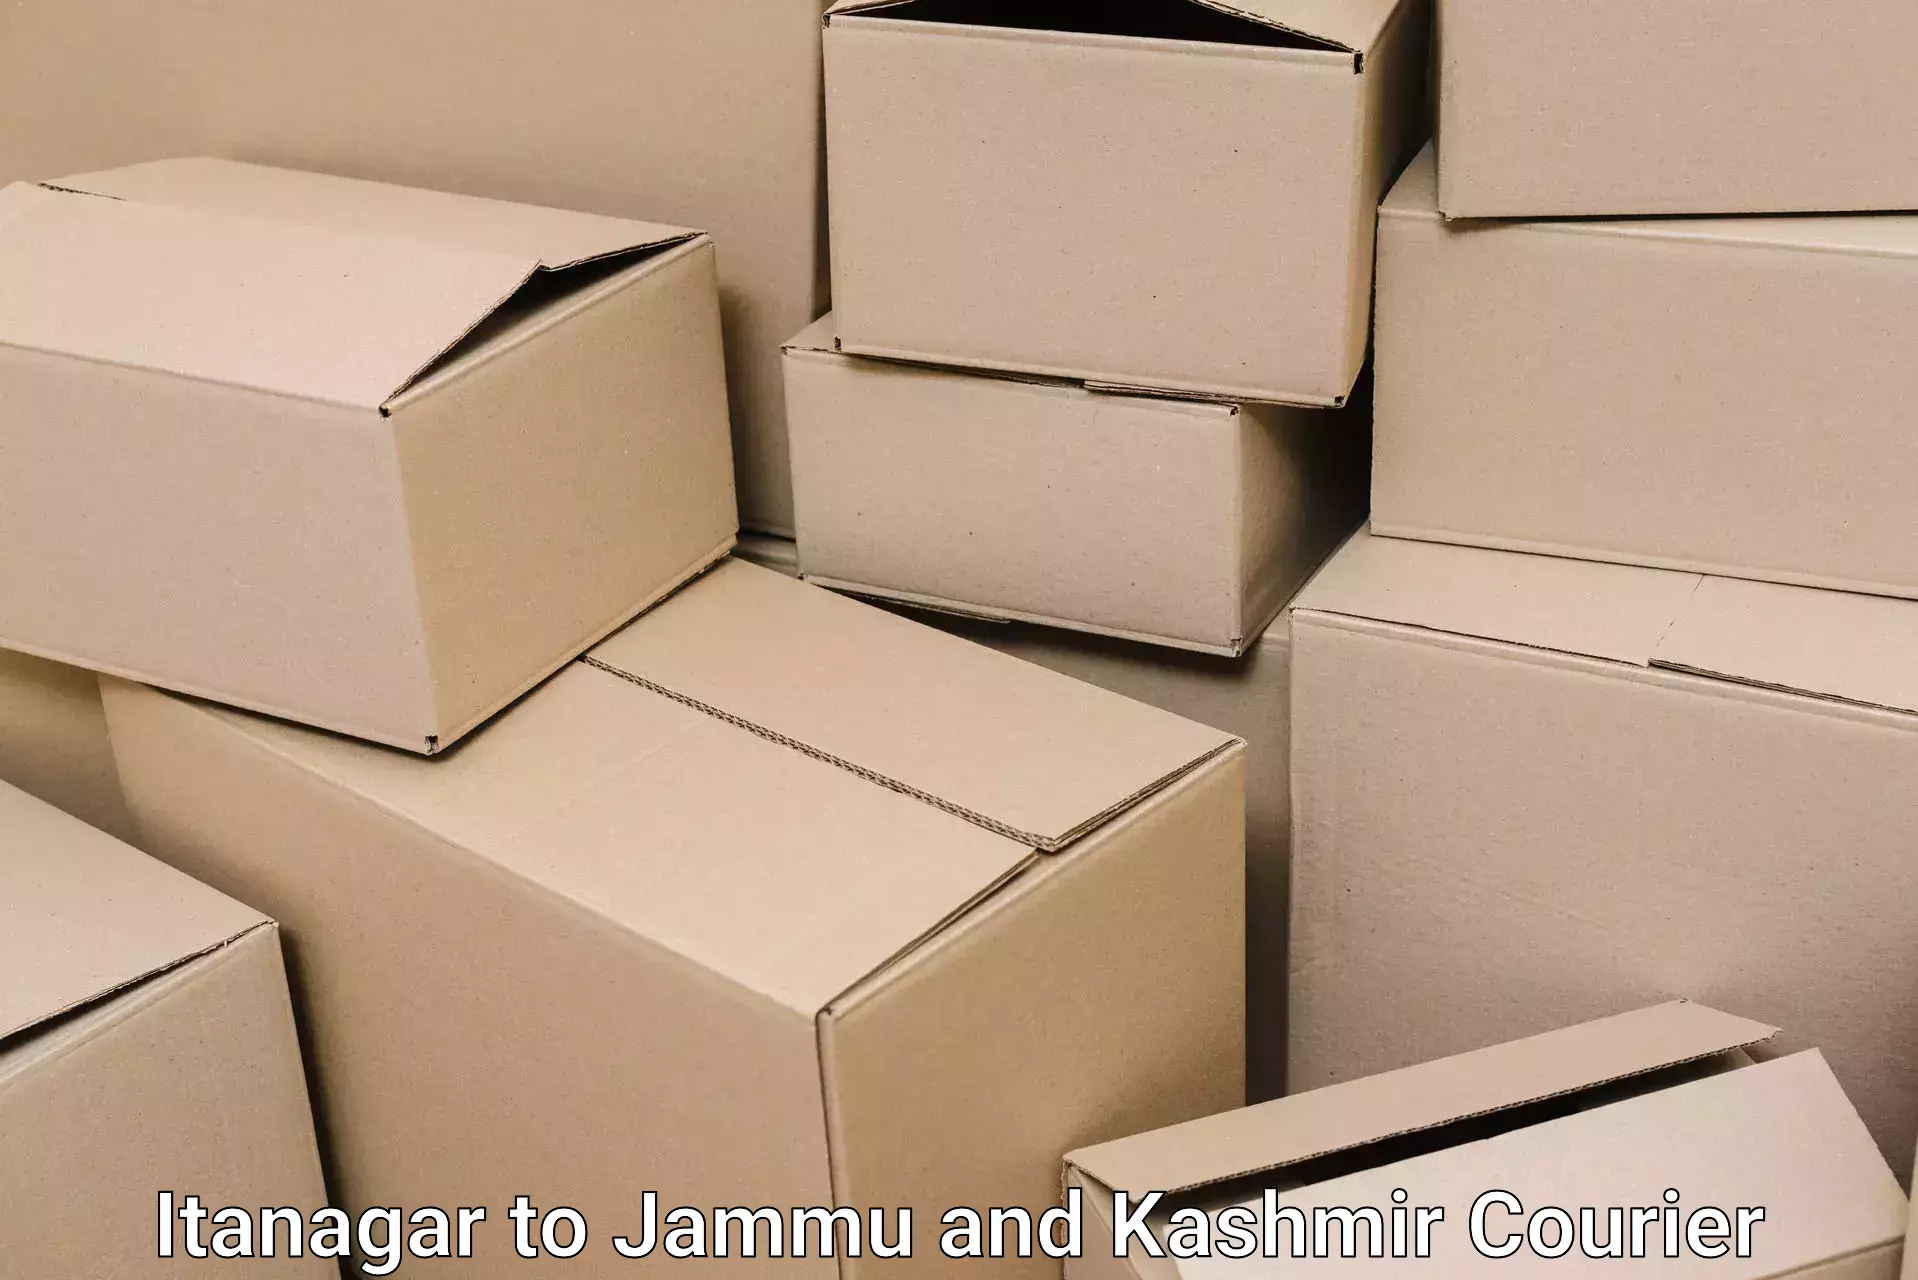 Dependable furniture transport Itanagar to Jammu and Kashmir